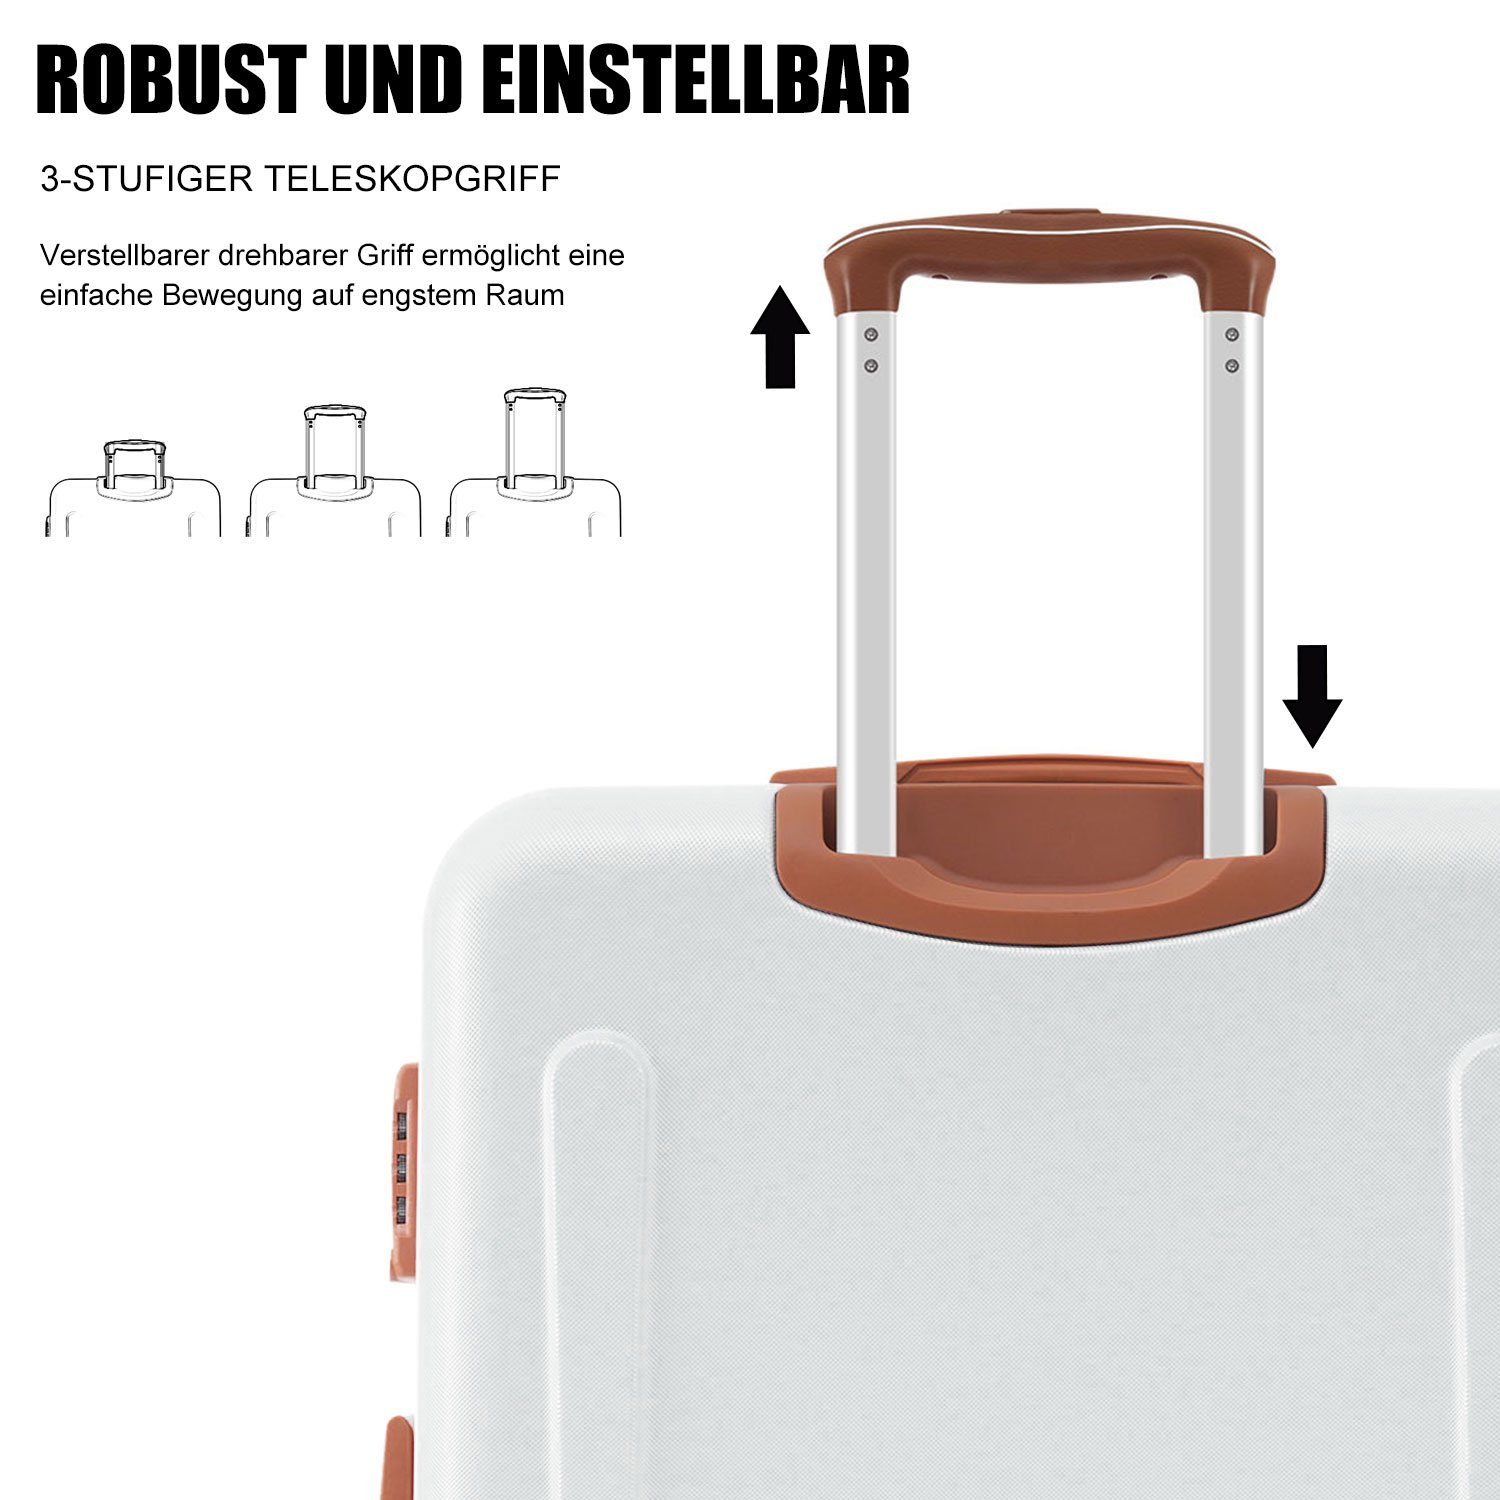 Handgepäck ABS-Material, Ulife Creame Reisekoffer Trolleyset Zollschloss, tlg) 4 Kofferset Rollen, (3 TSA